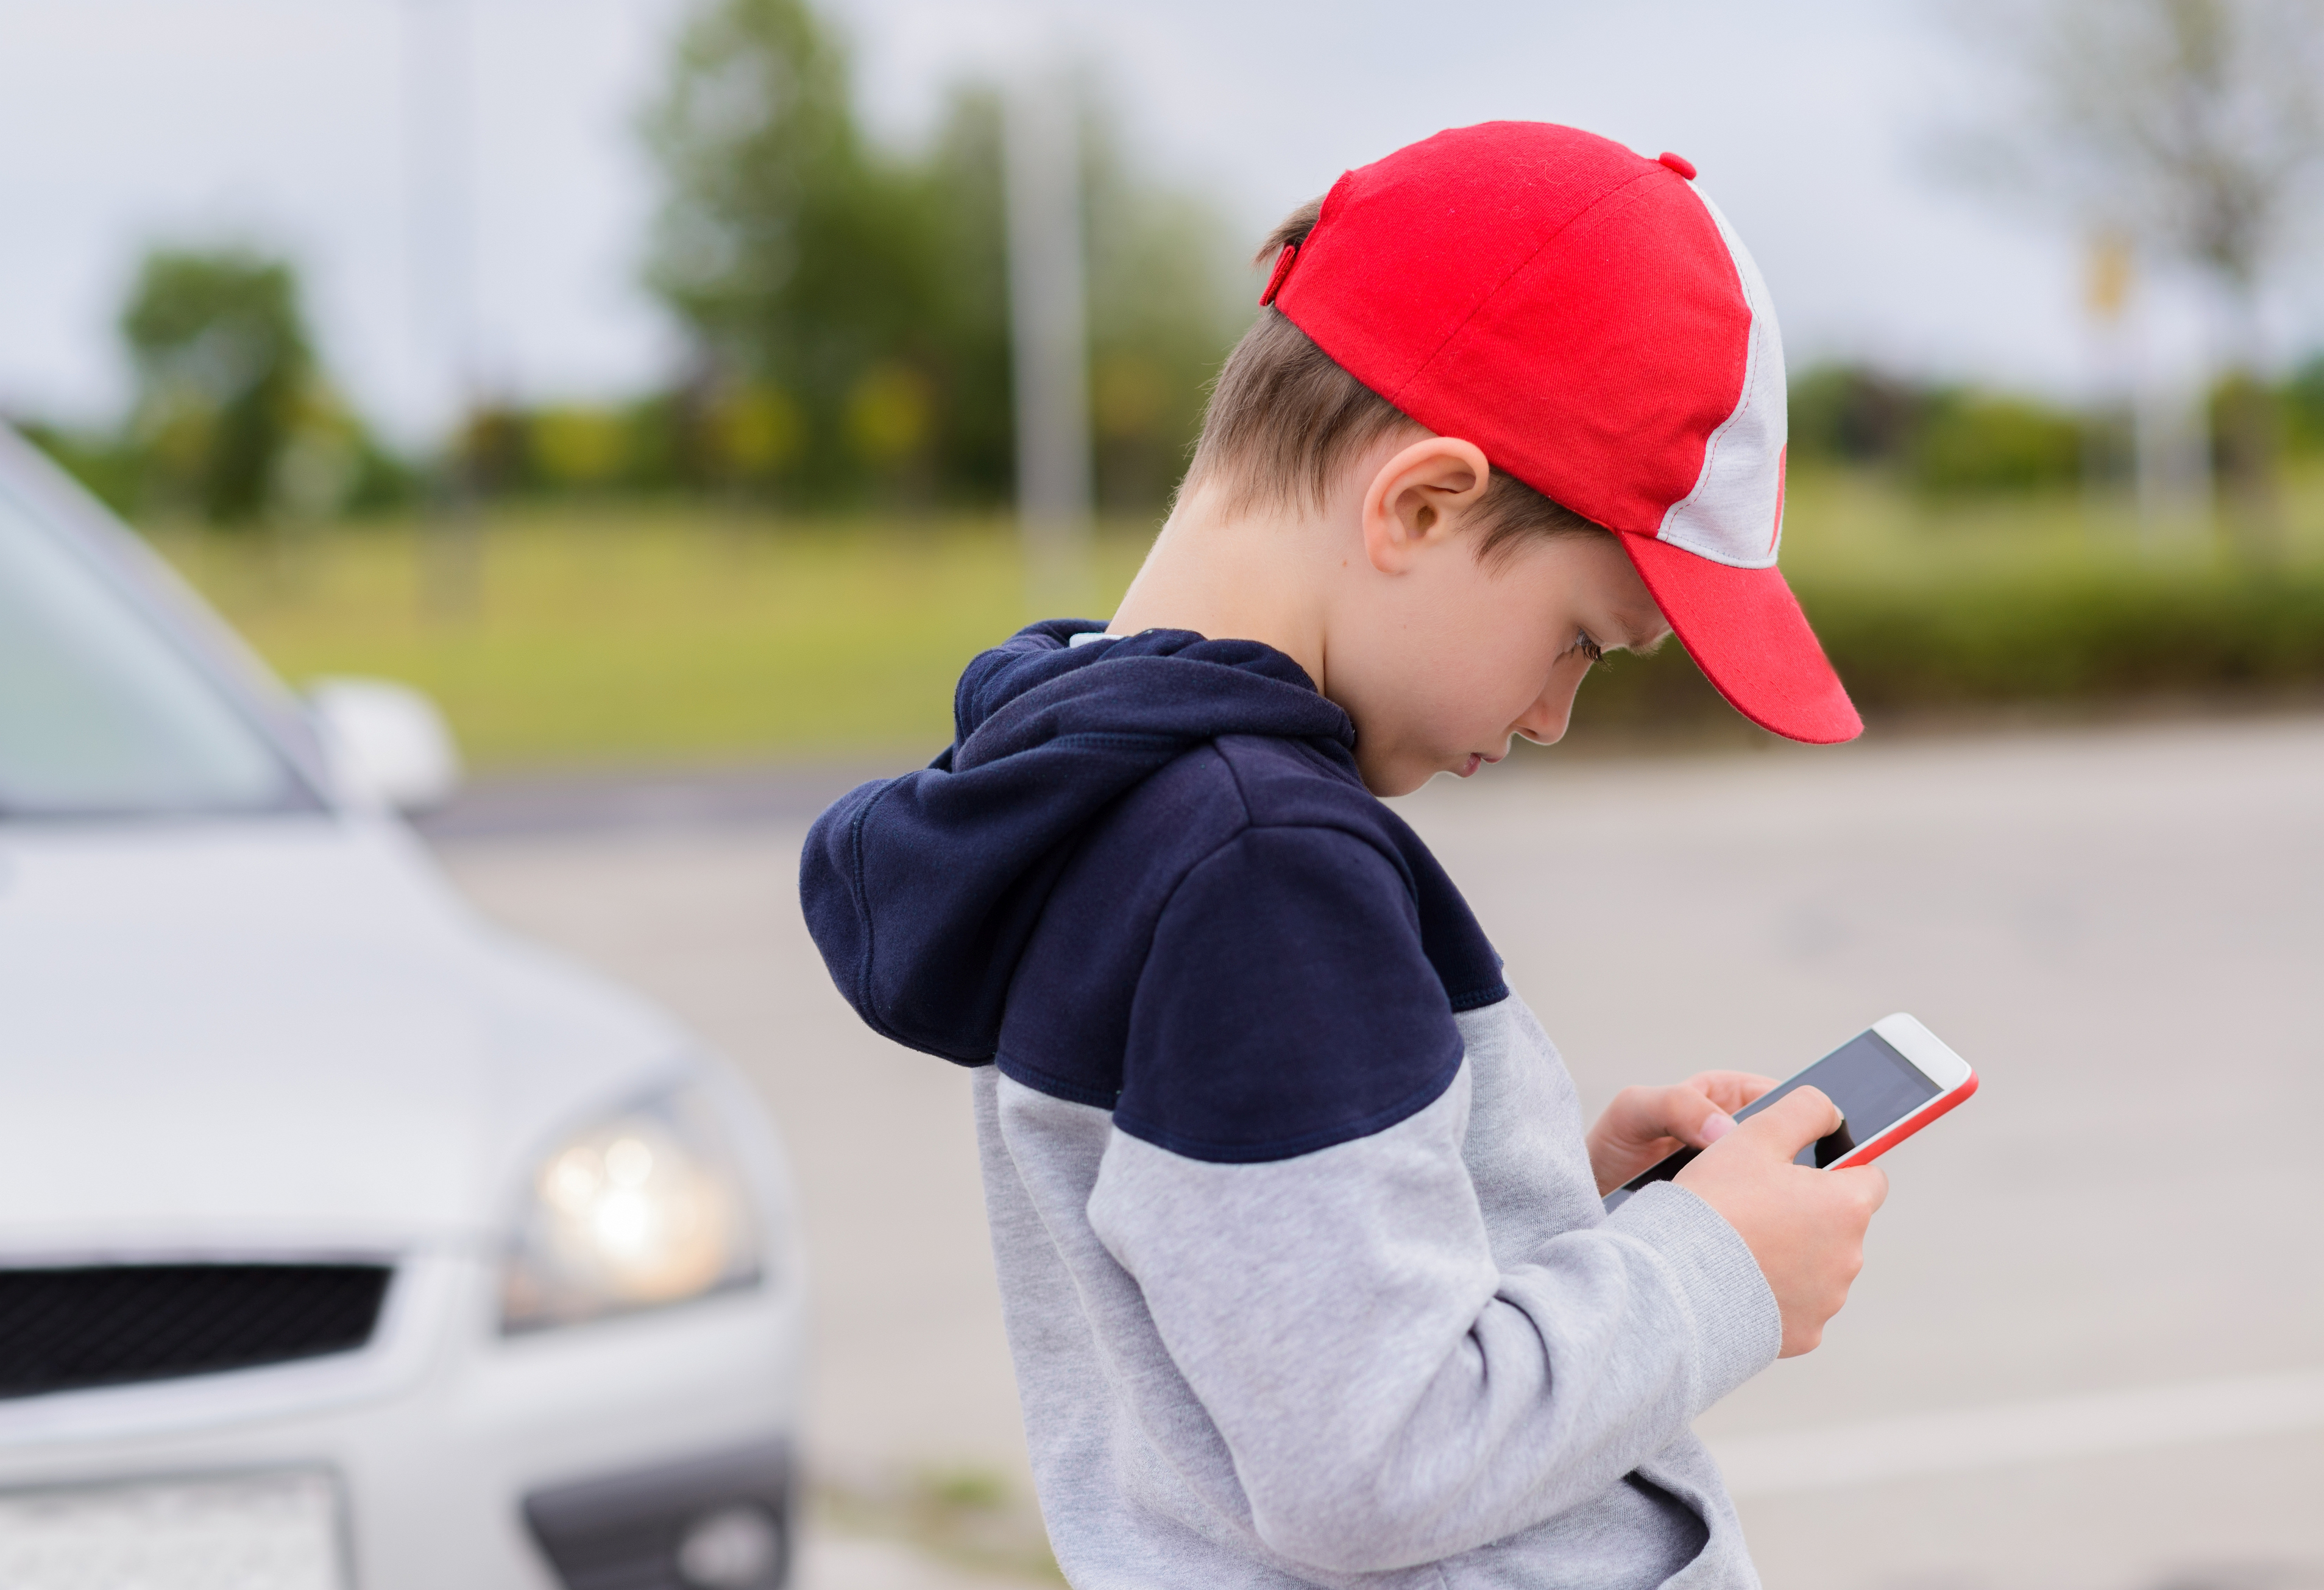 Gutt med caps stirrer intenst på mobiltelefonen. En bil nærmer seg i bakgrunnen uten at han tilsynelatende legger merke til det.